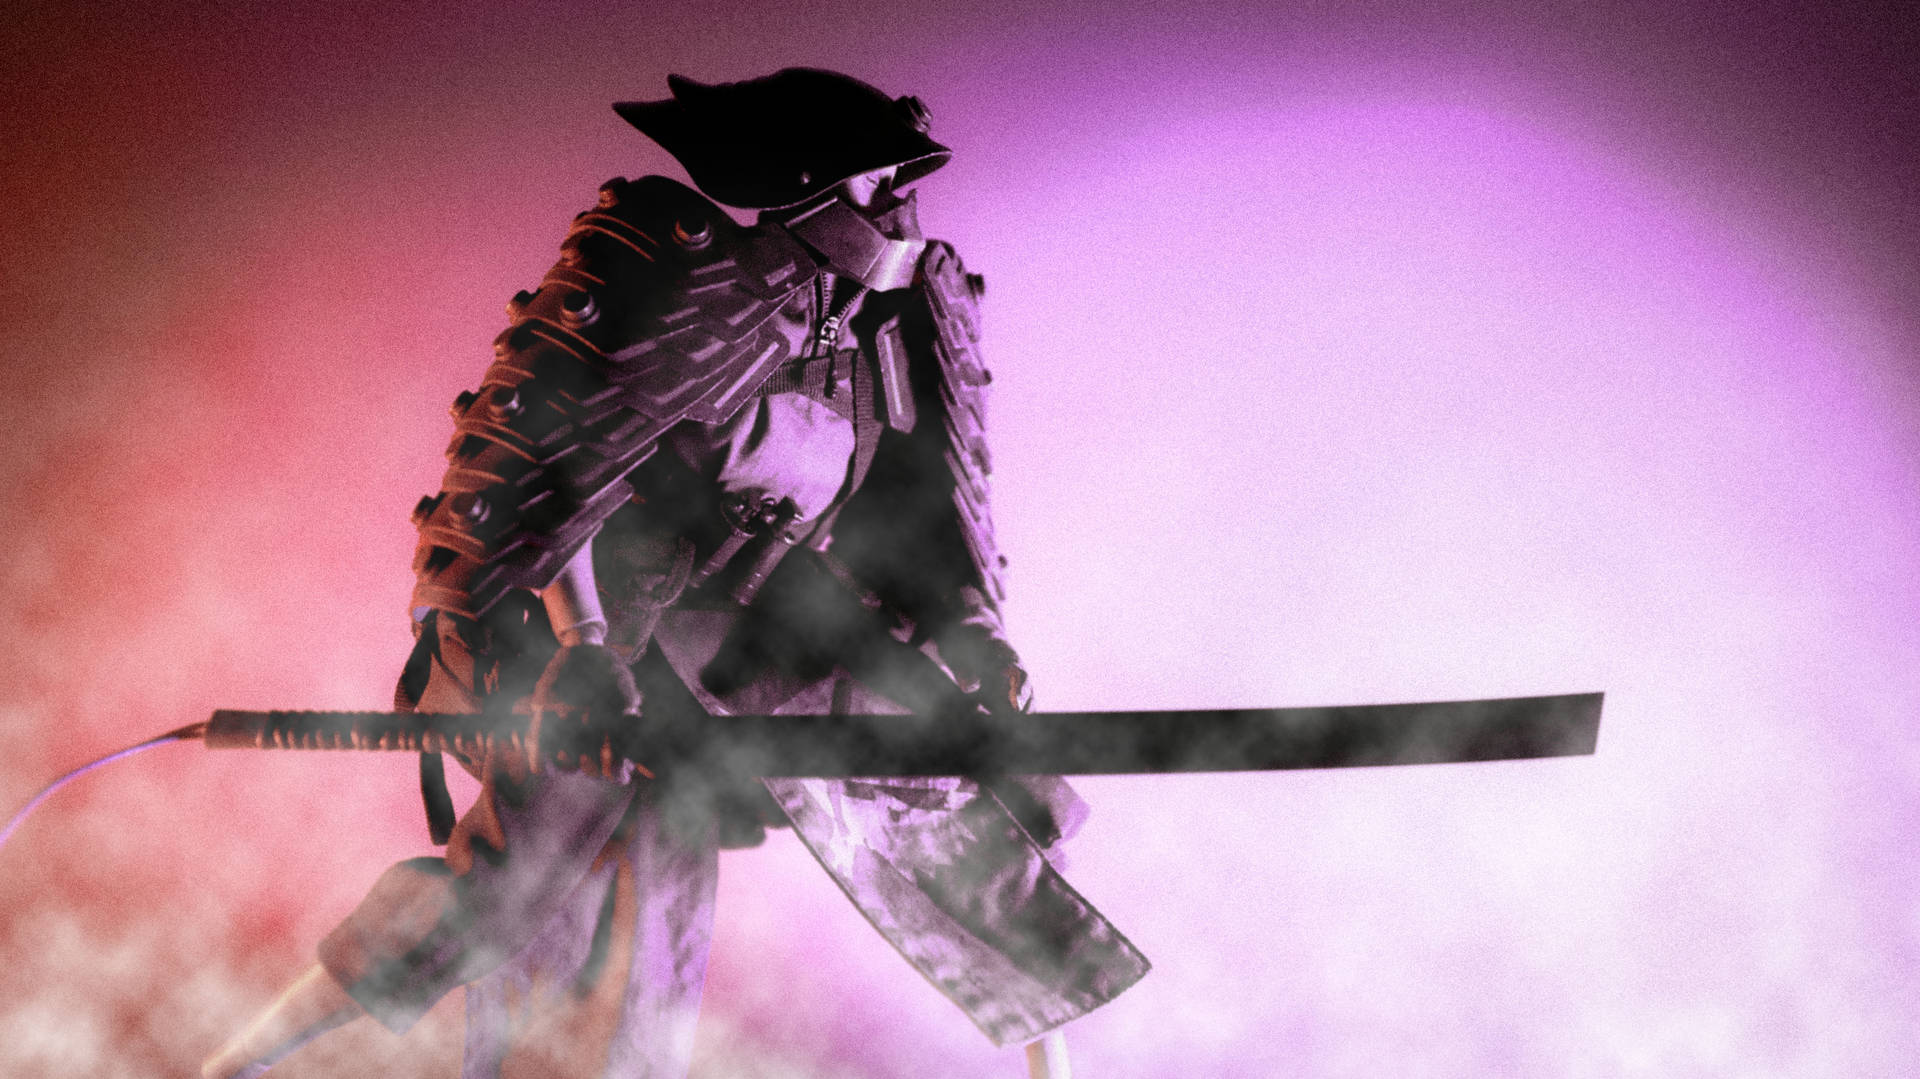 A samurai with a sword and a gas mask - Samurai